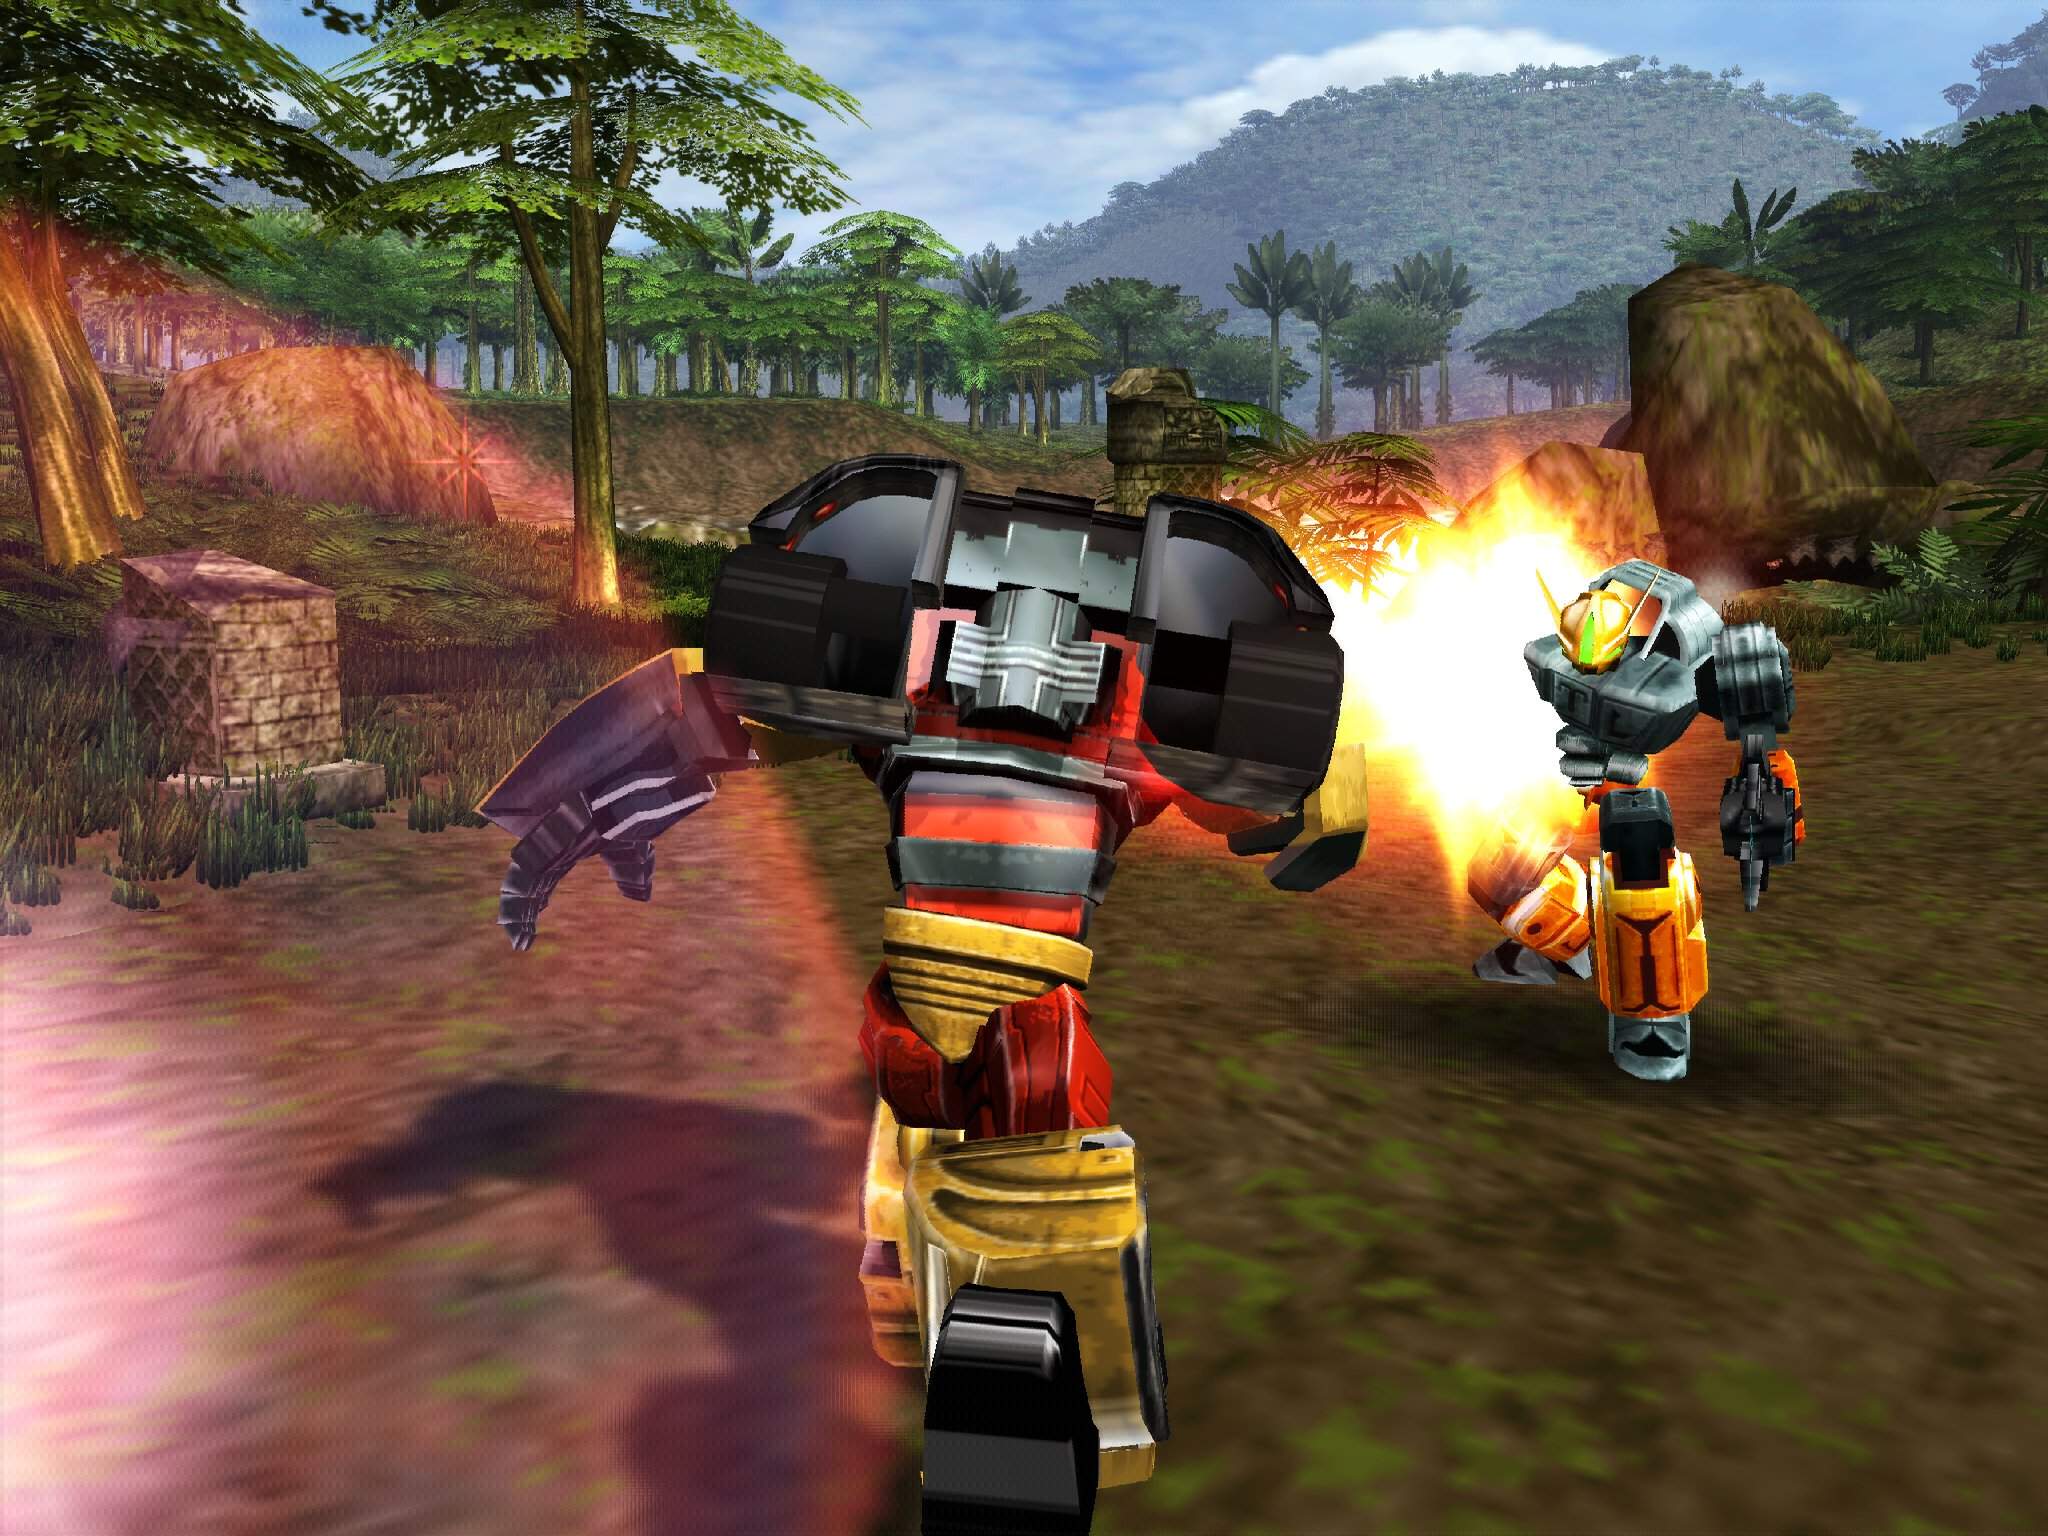 Imágenes de Transformers Armada: Prelude to Energon.